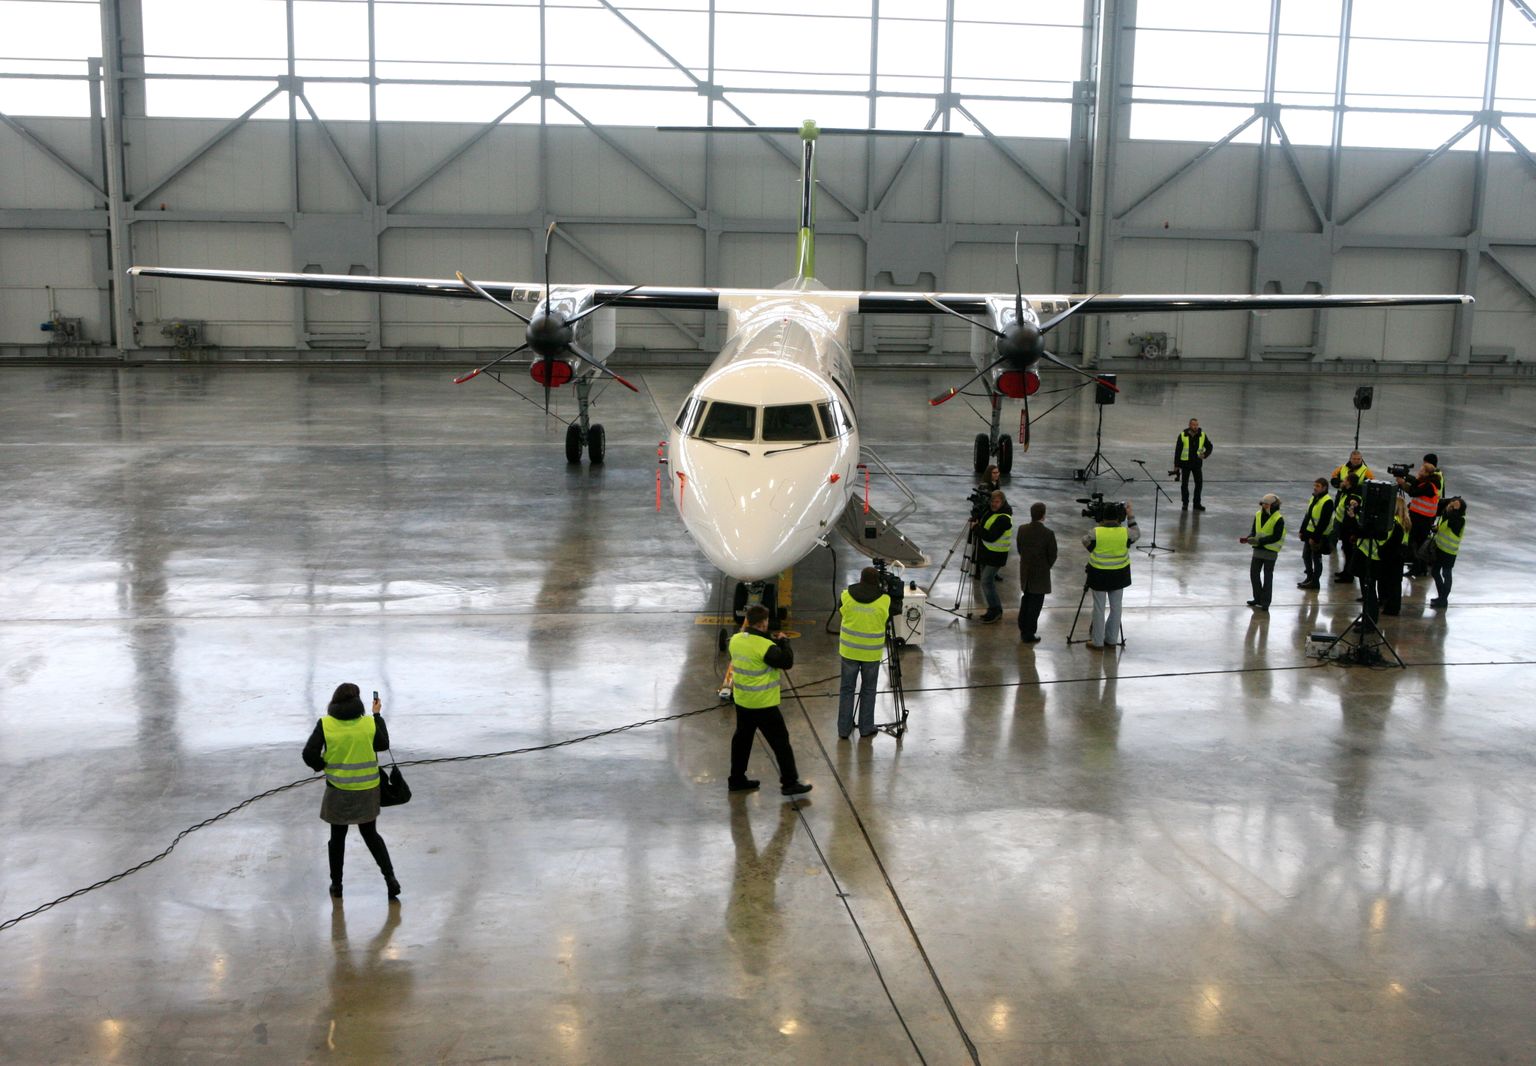 Latvijas nacionālās aviokompānijas "airBaltic" rīkotais pasākums, kurā iepazīstina ar jauno "Bombardier Q400 NextGen" lidmašīnu. 2010.gads.